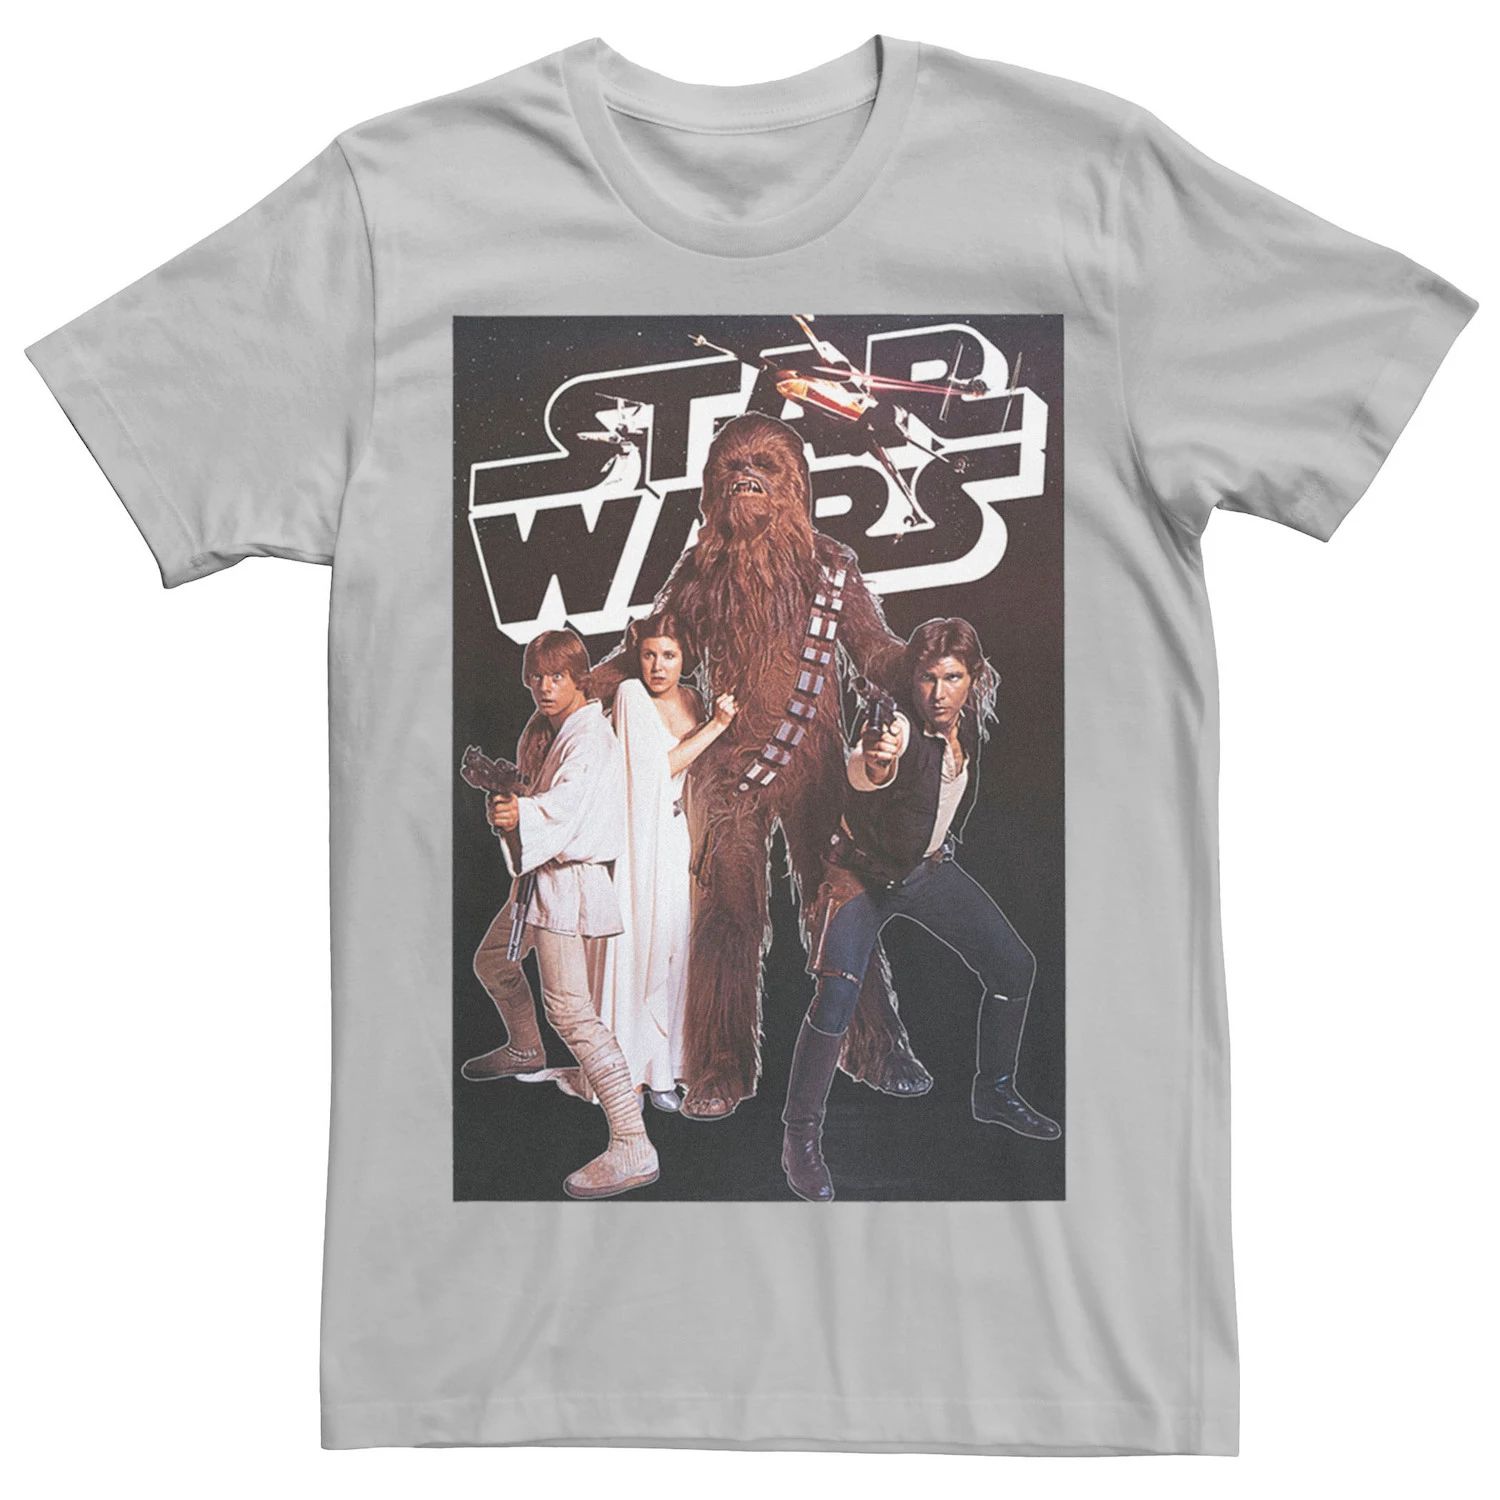 Мужская винтажная футболка с плакатом для группы «Звездные войны» Star Wars, серебристый